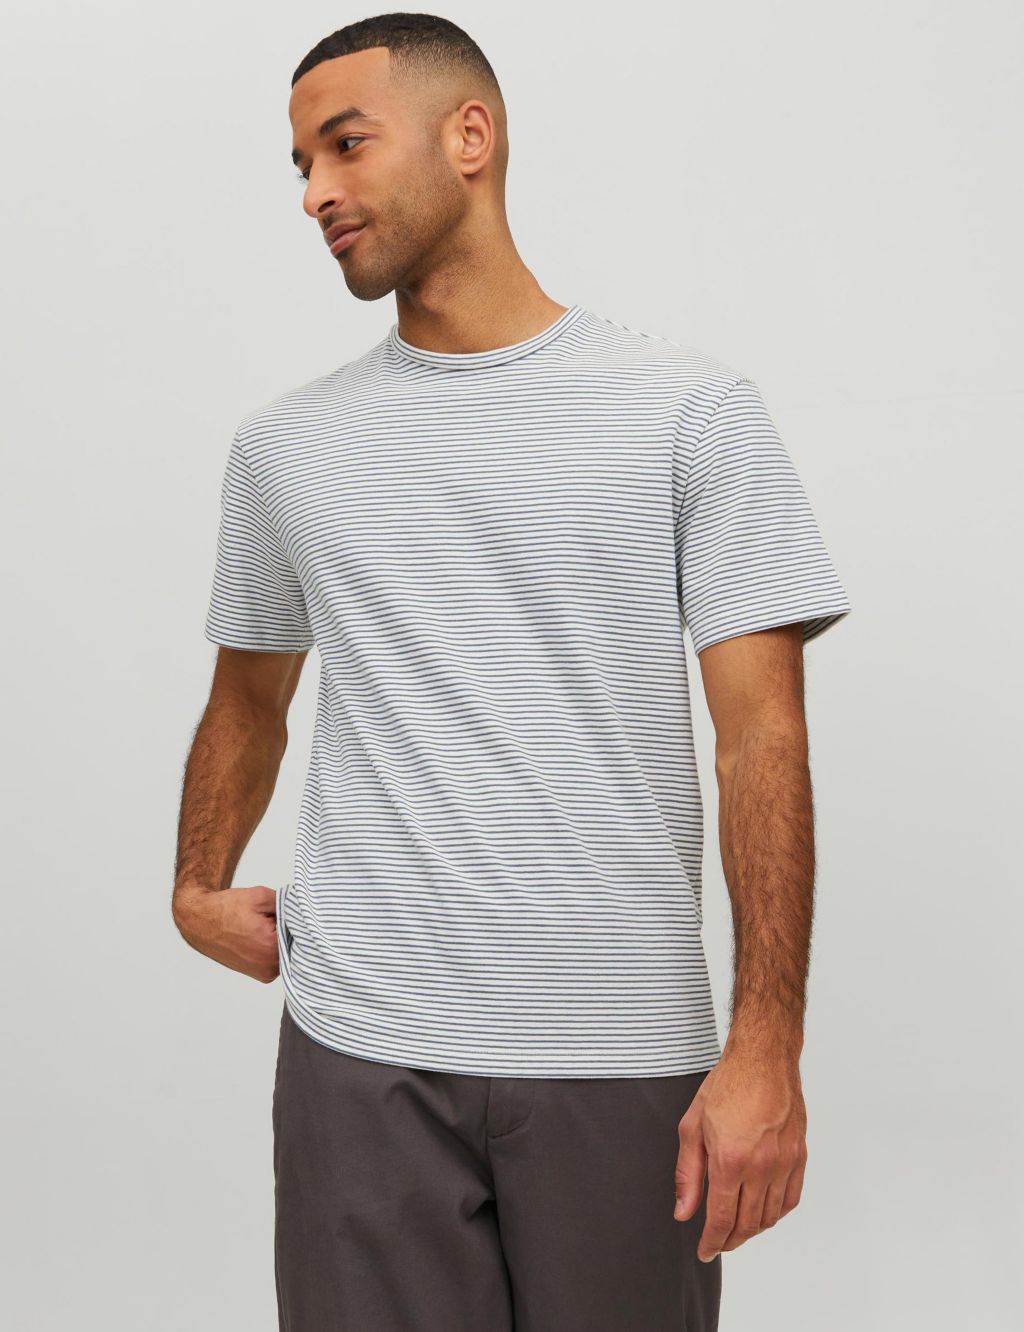 Cotton Rich Striped Crew Neck T-Shirt image 1